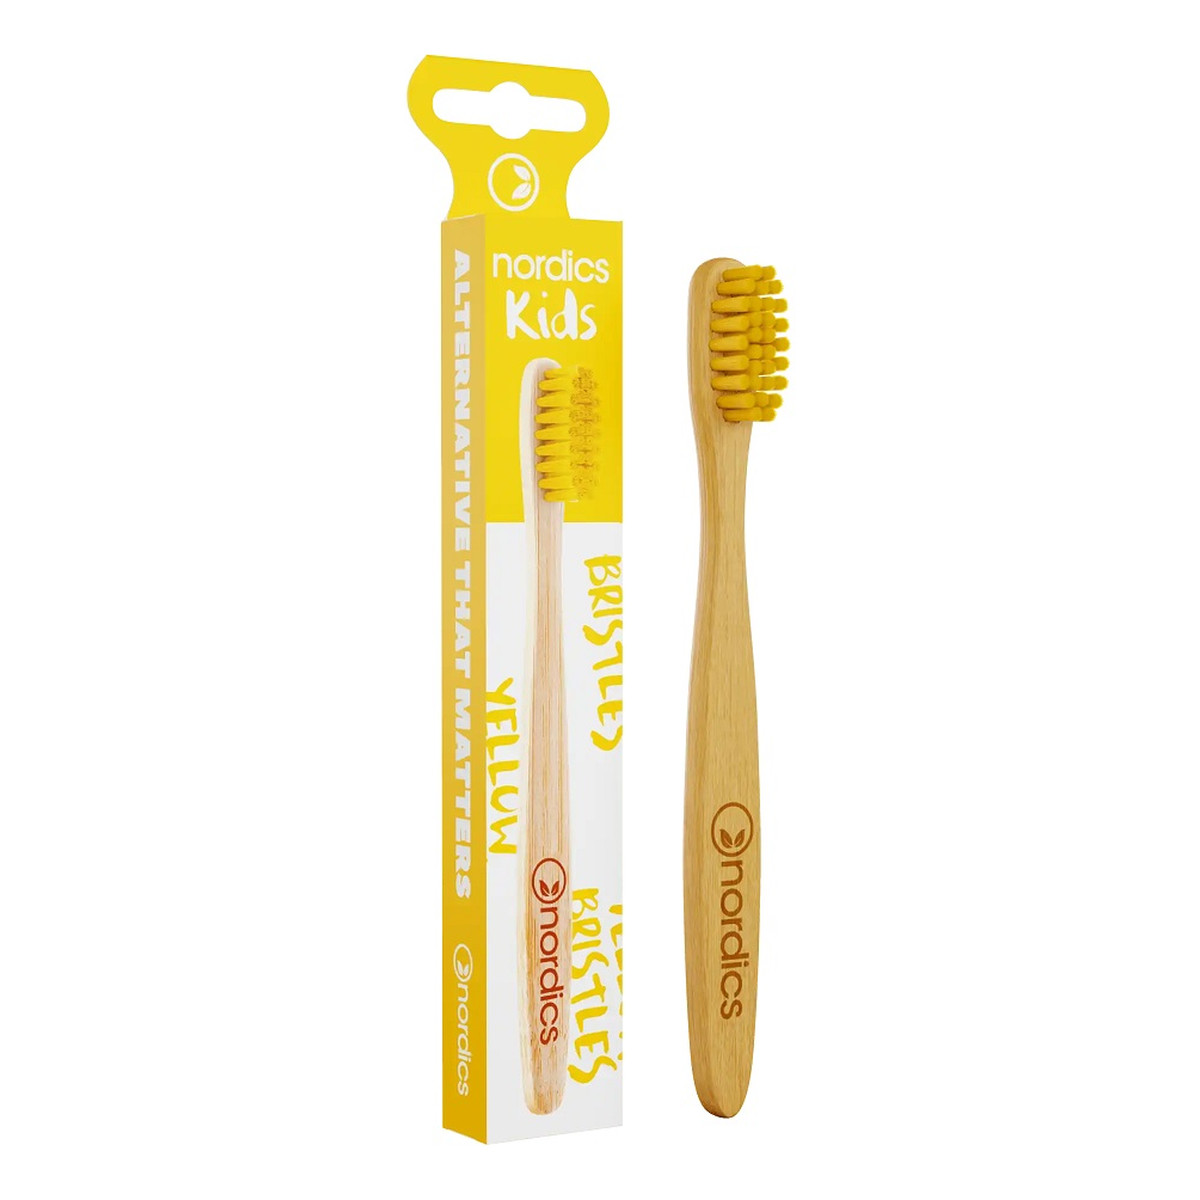 Nordics Kids bamboo toothbrush bambusowa szczoteczka do zębów dla dzieci yellow